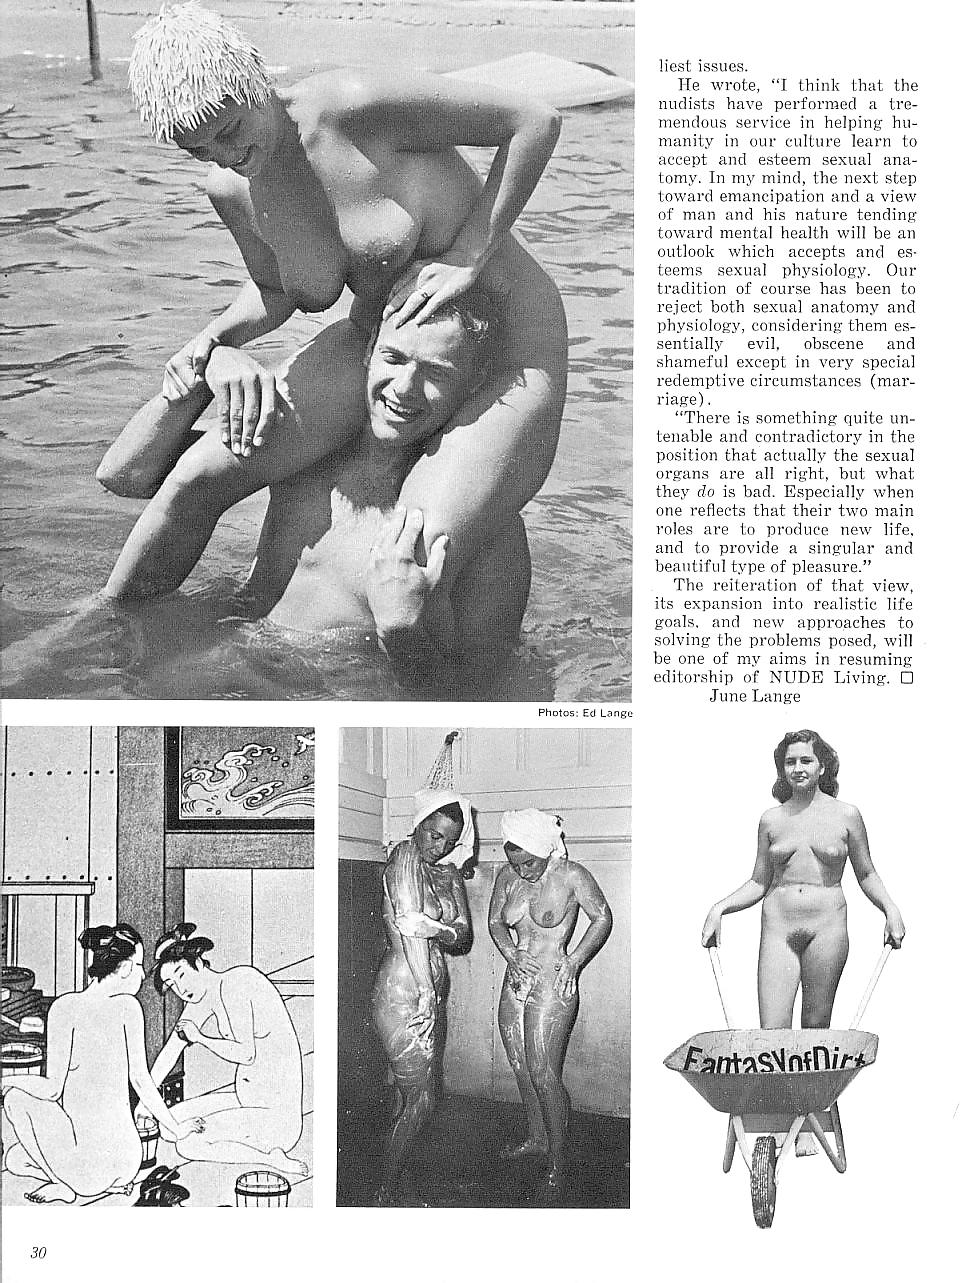 Nude living #21 - rivista nudista d'epoca
 #25812455